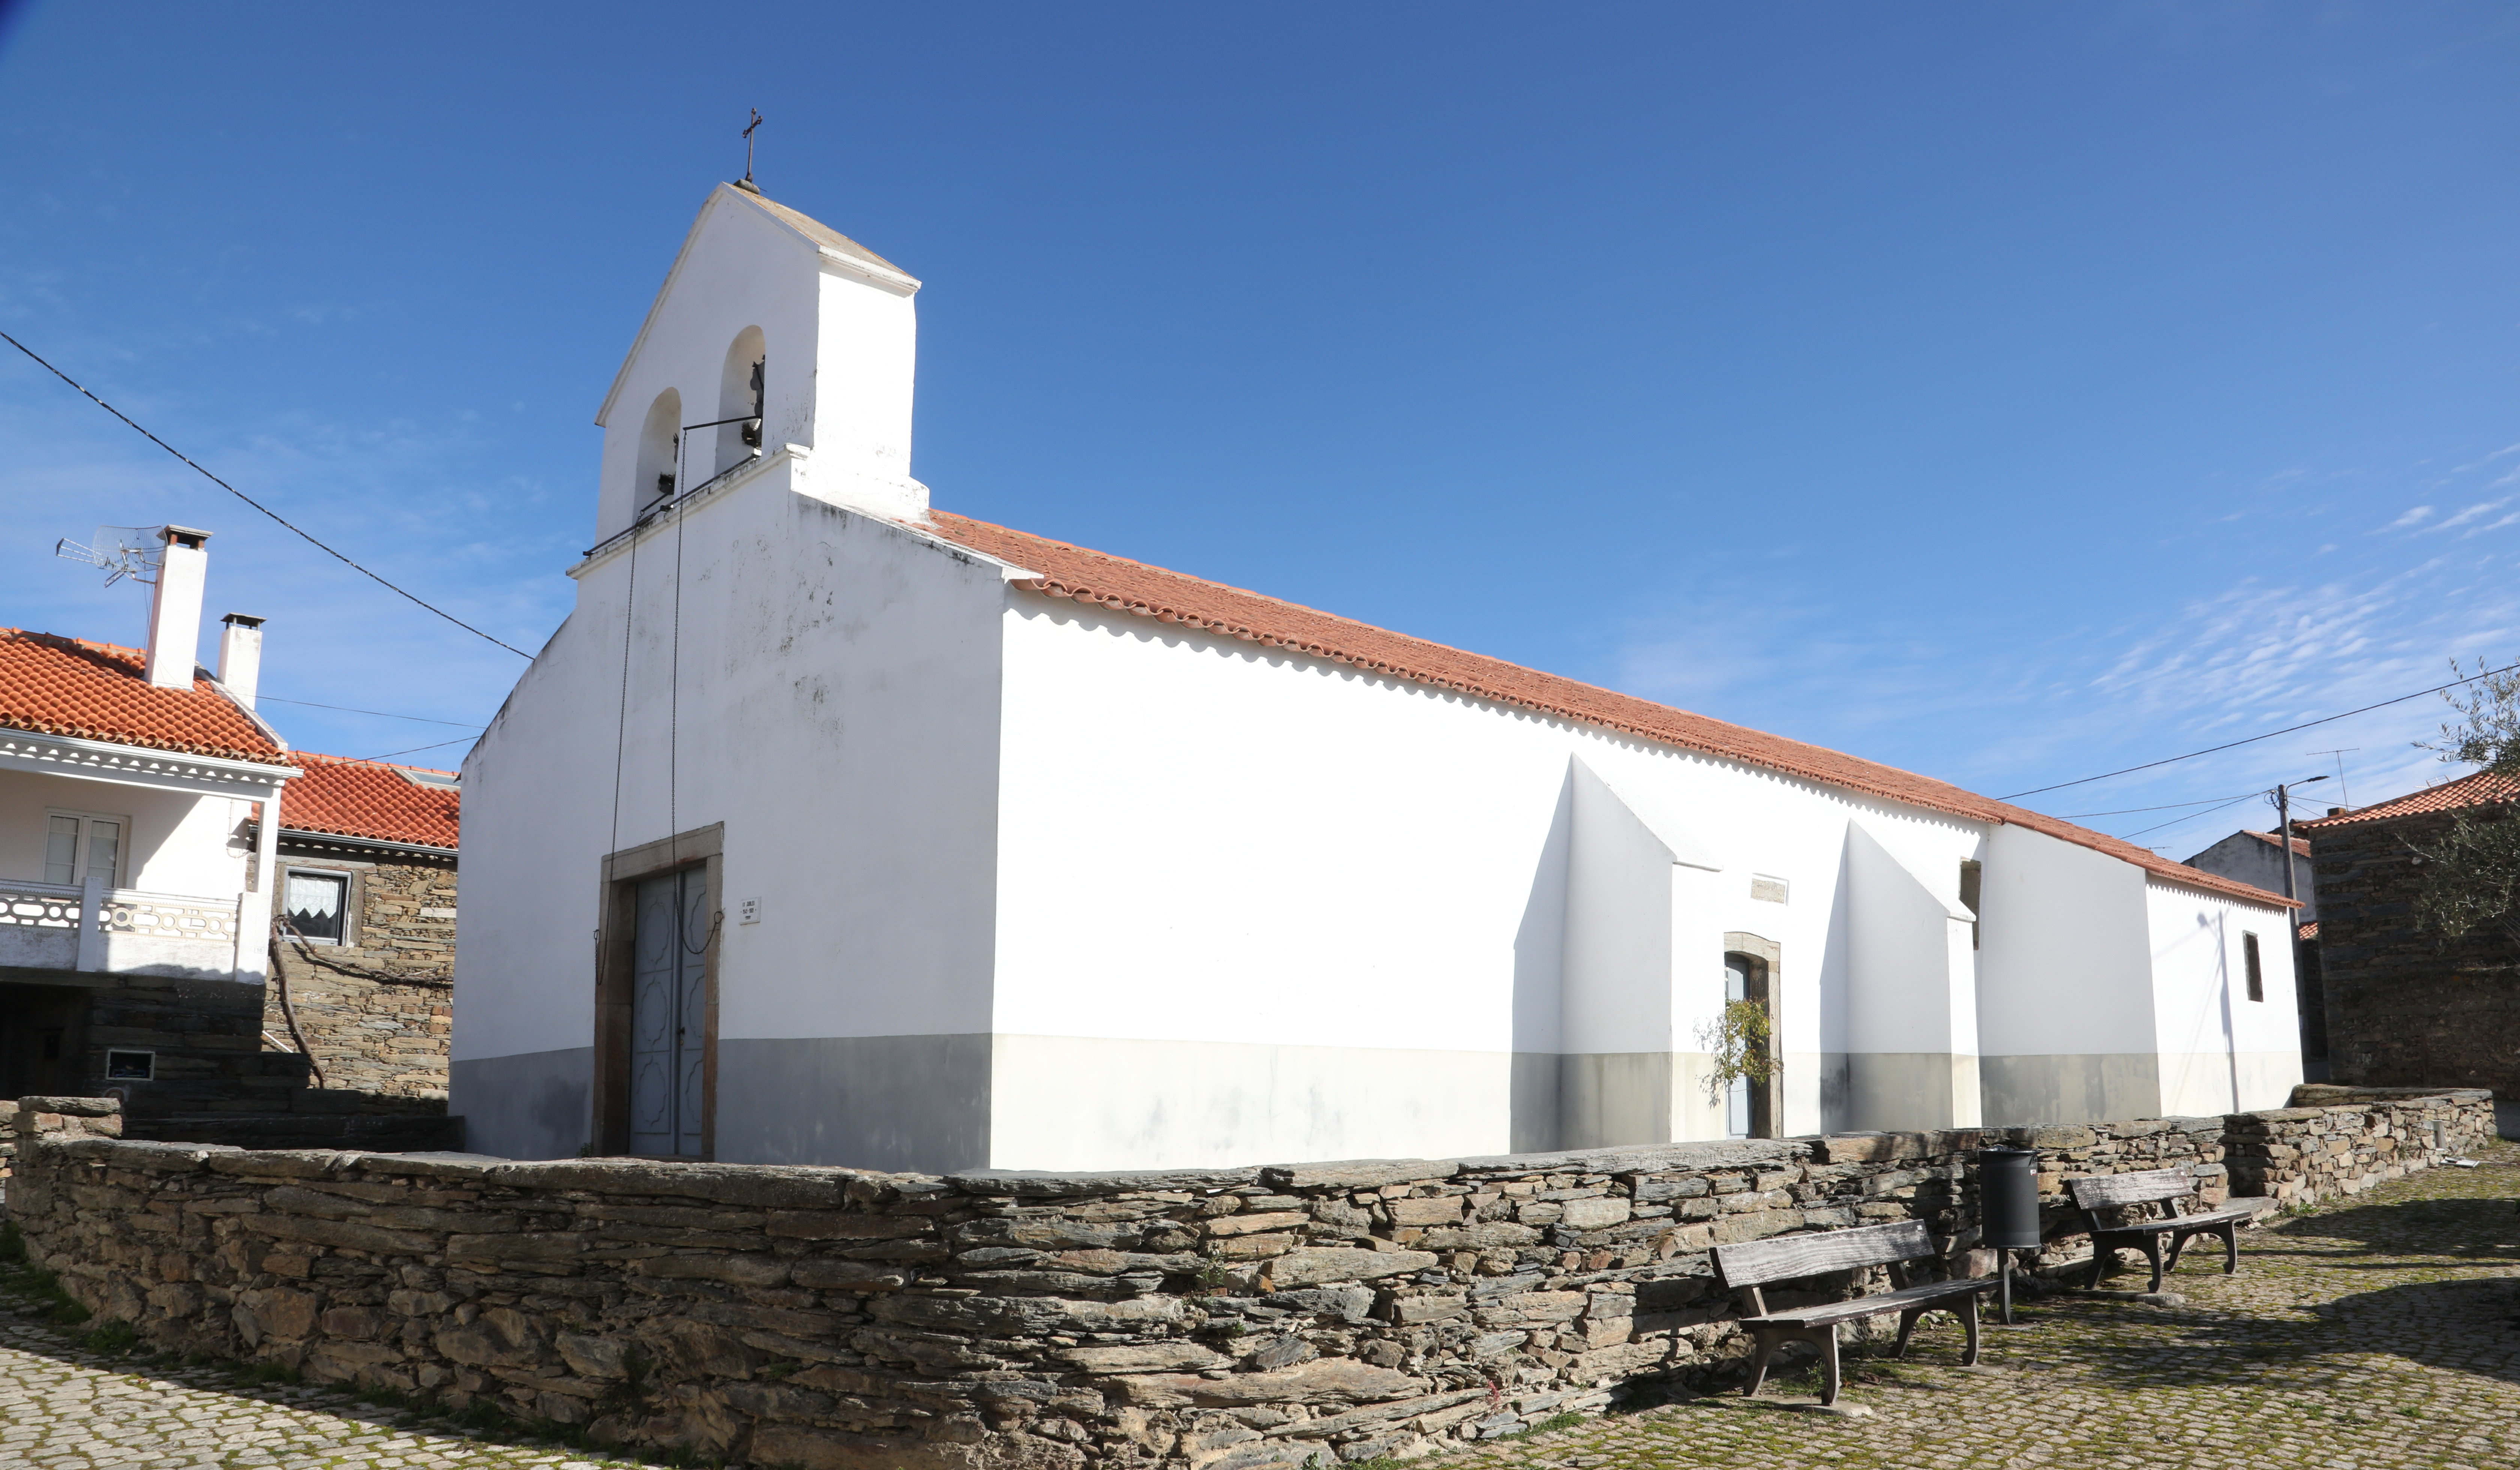 Igreja de São Julião, Peredo dos Castelhanos